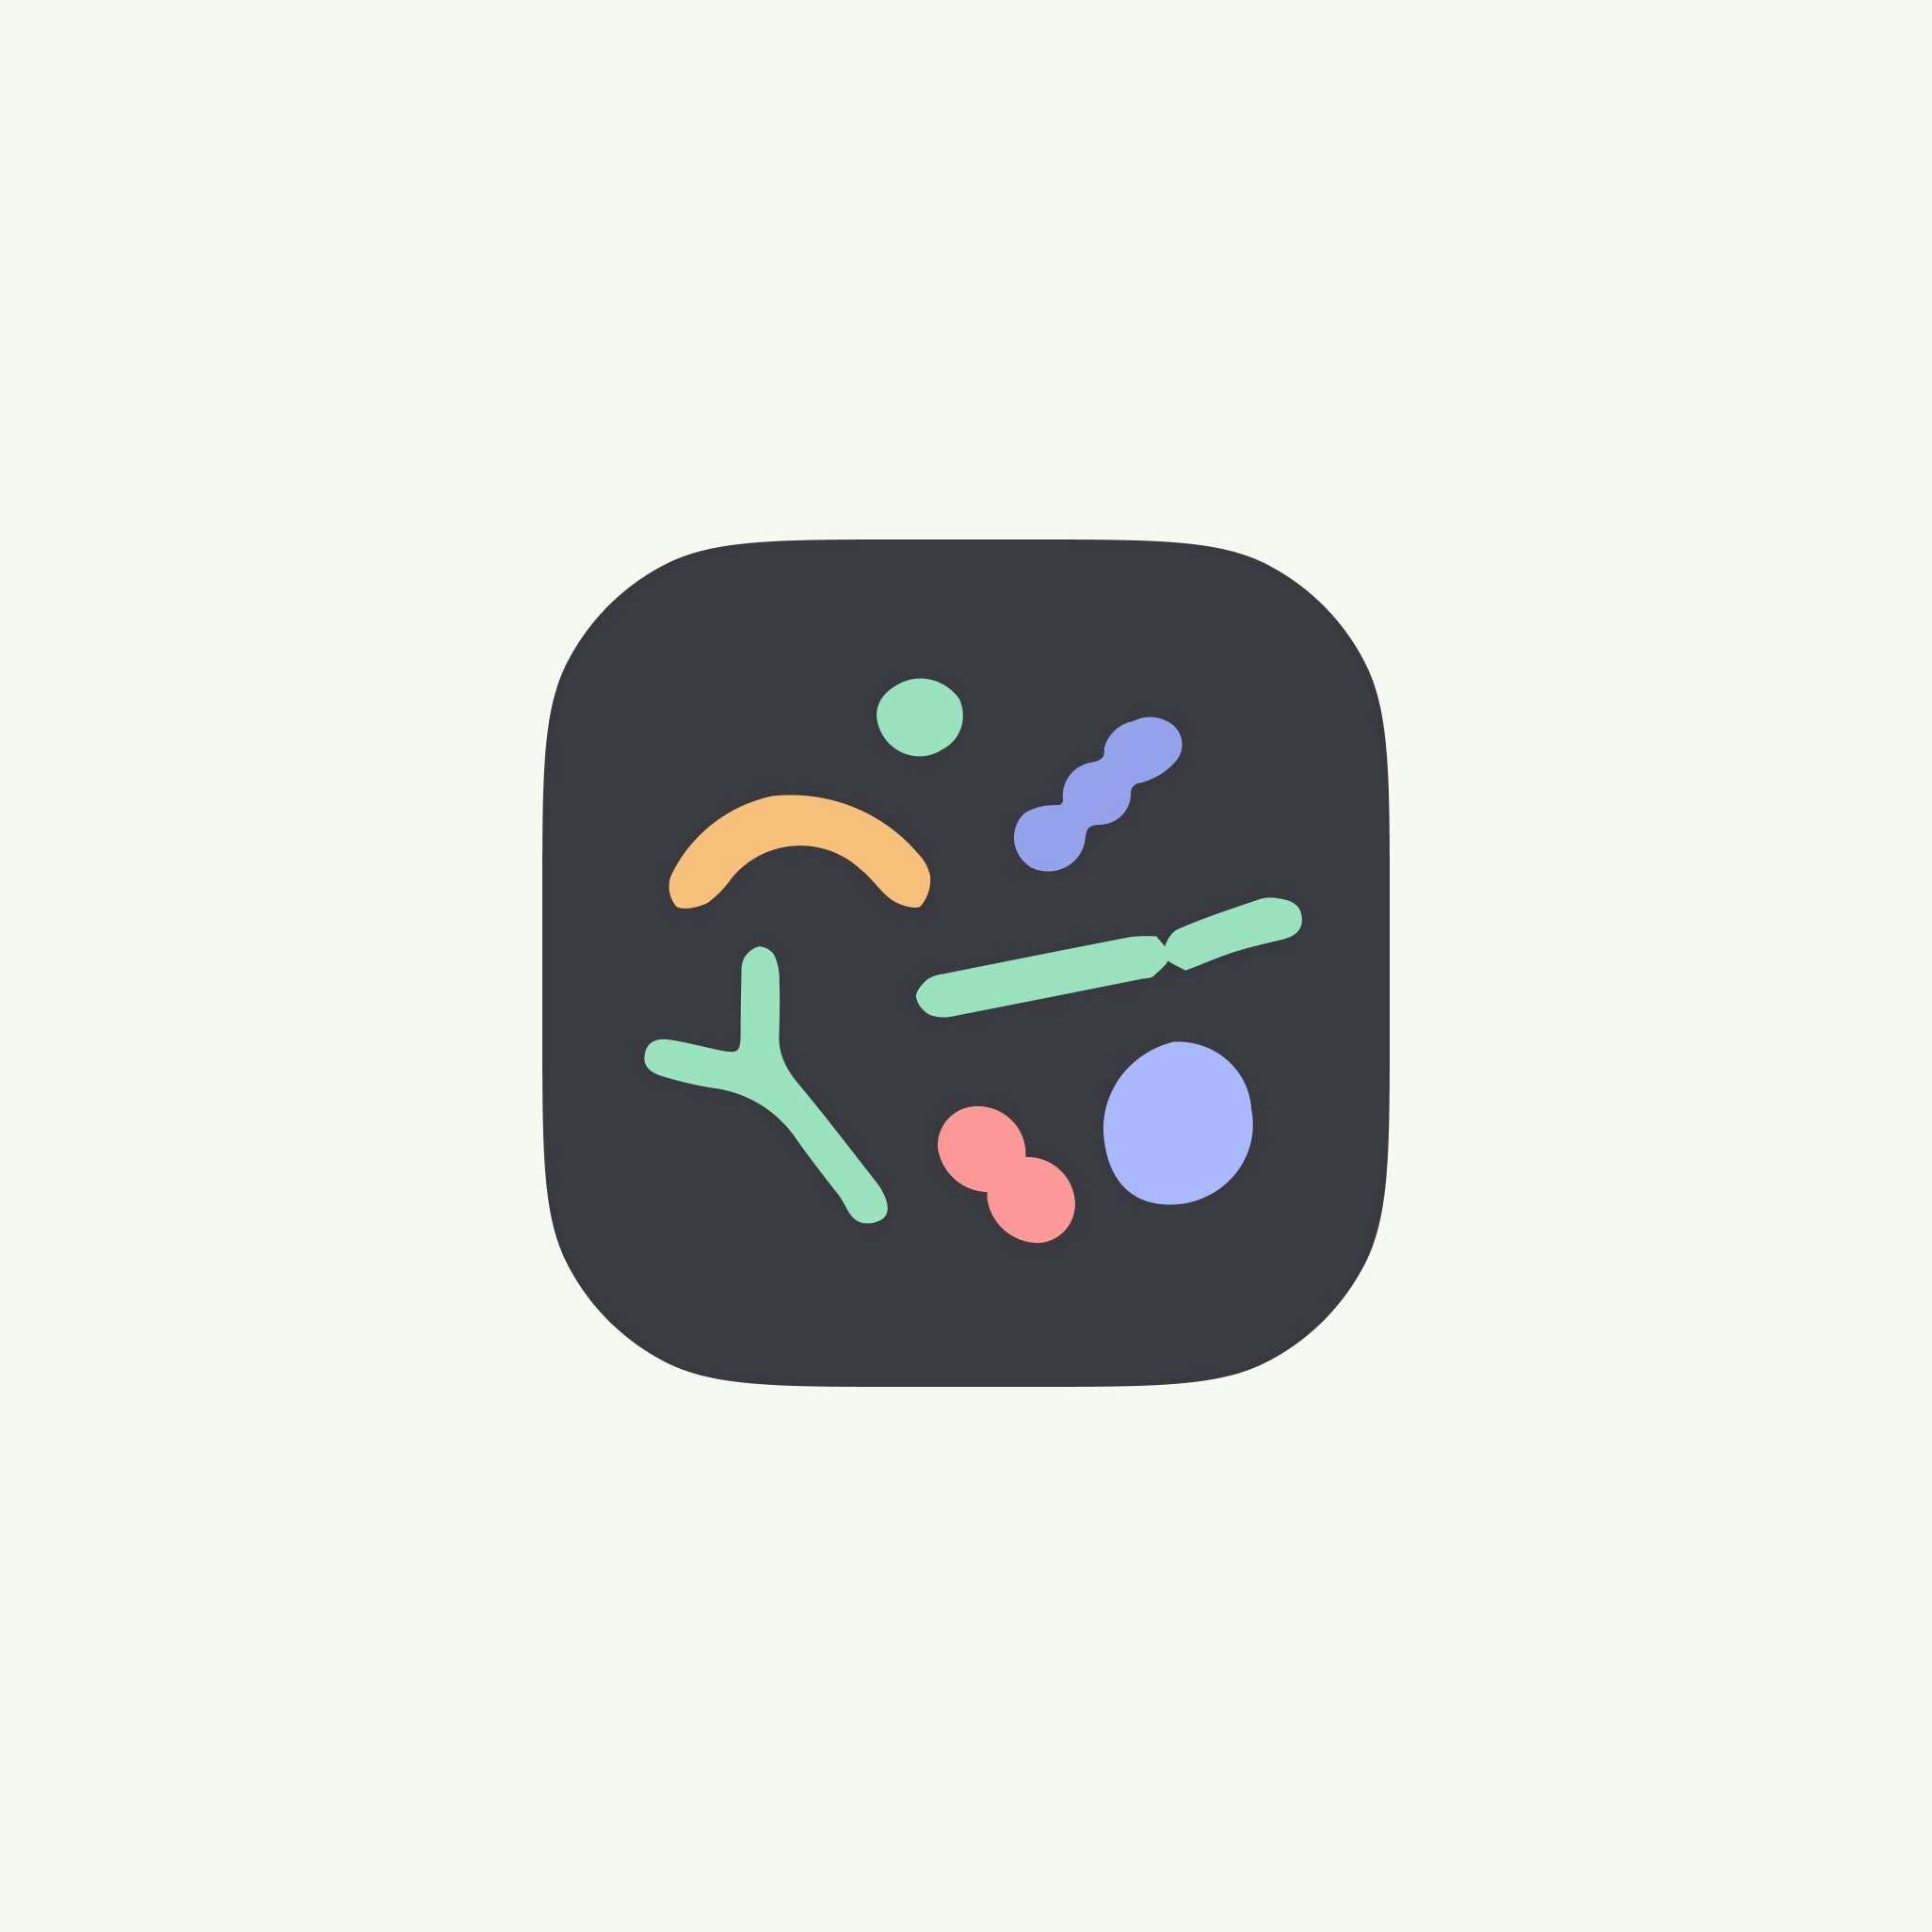 Tiny health app icon